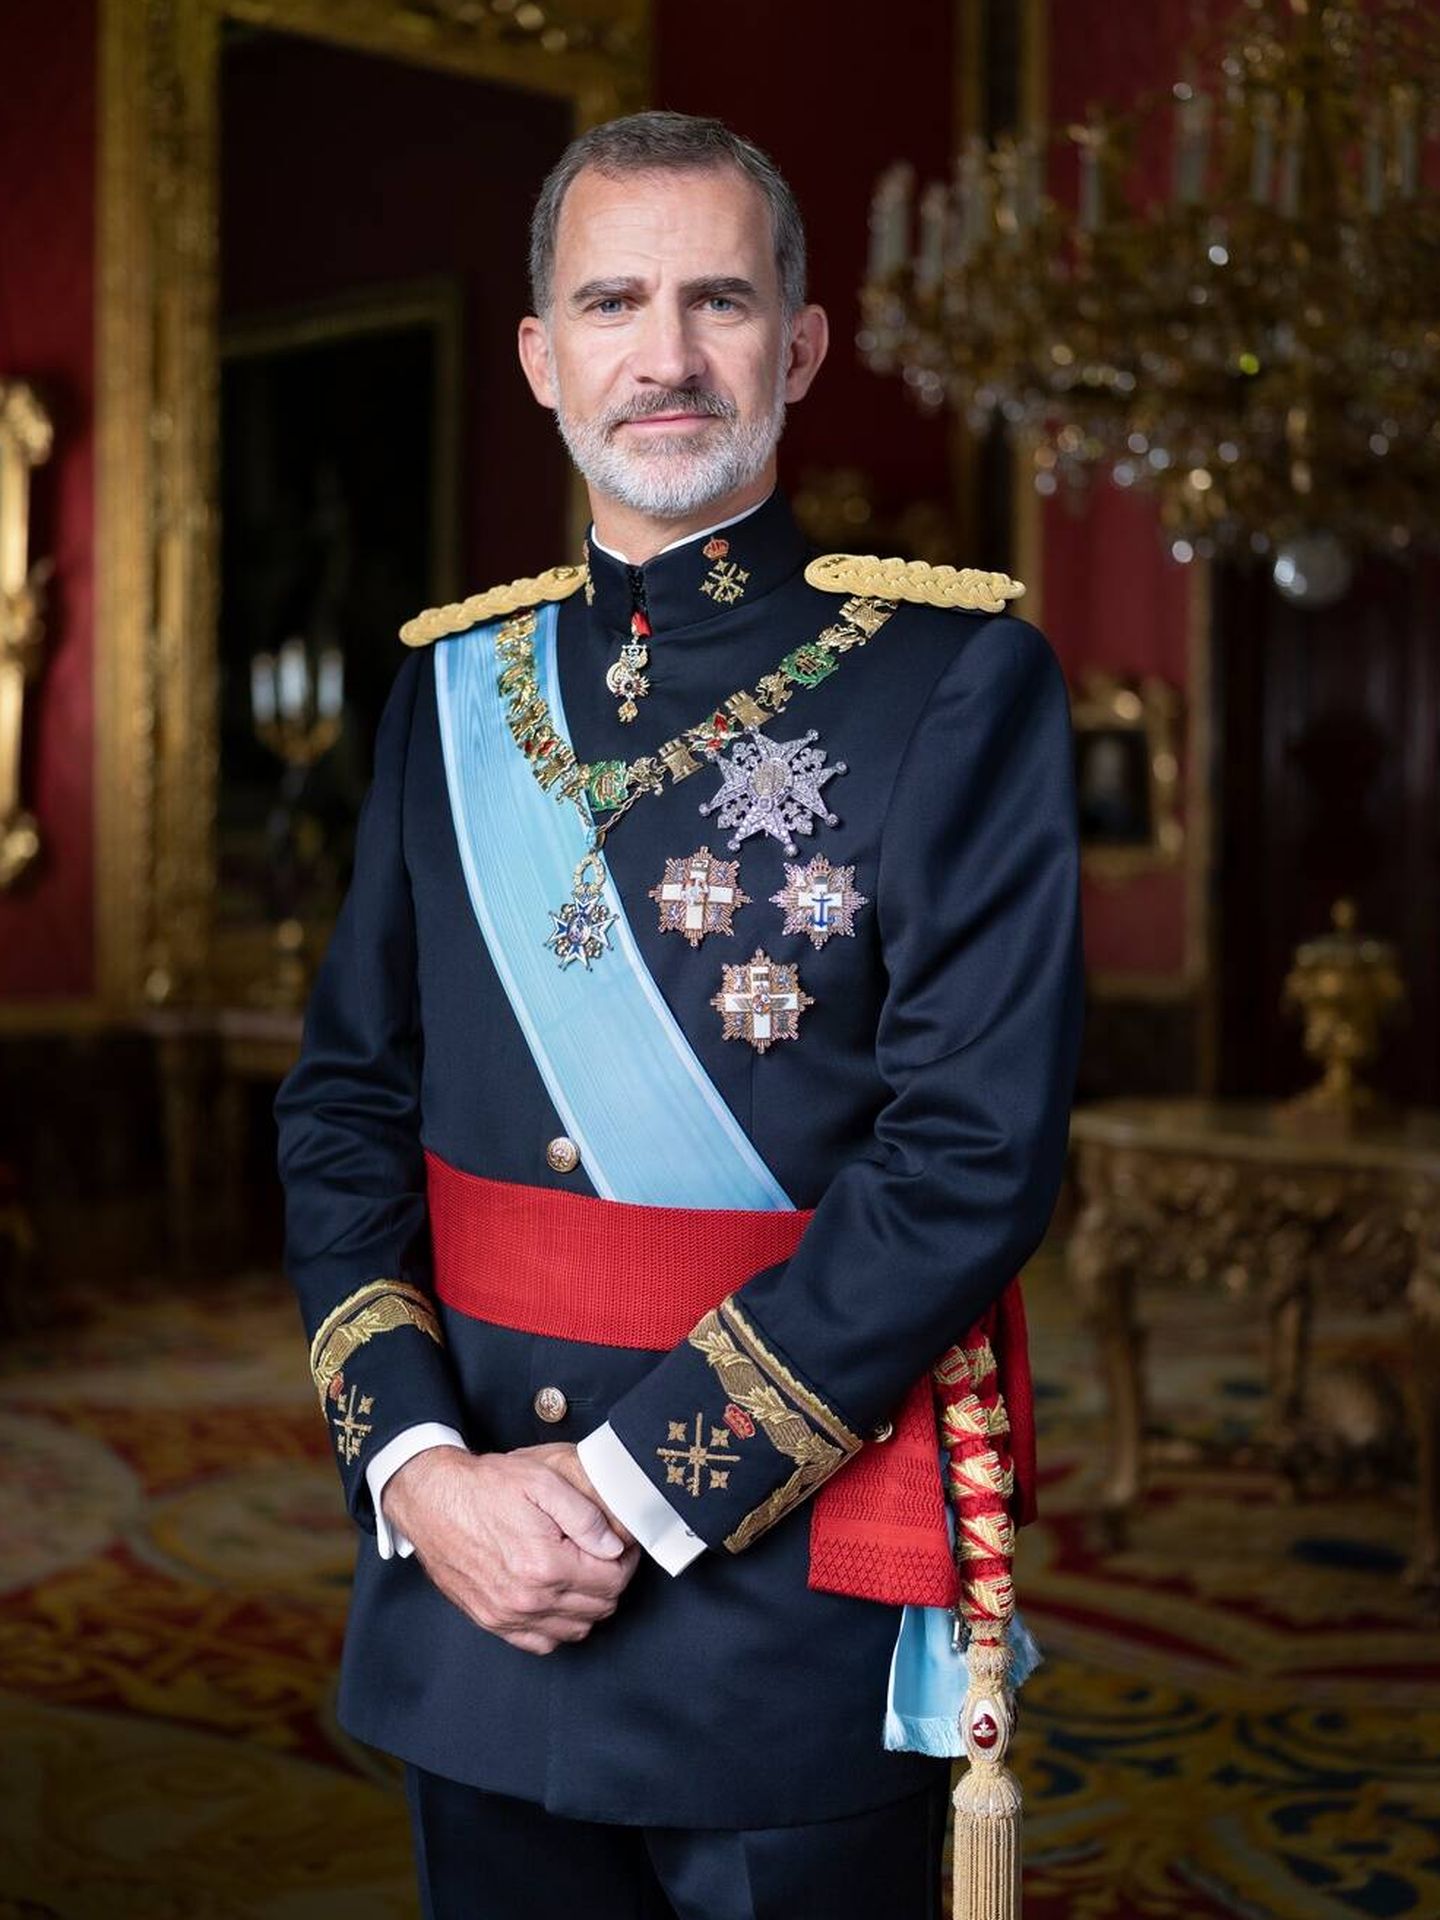 El collar de la Orden de Carlos III en una imagen oficial del rey Felipe VI. (Casa Real)